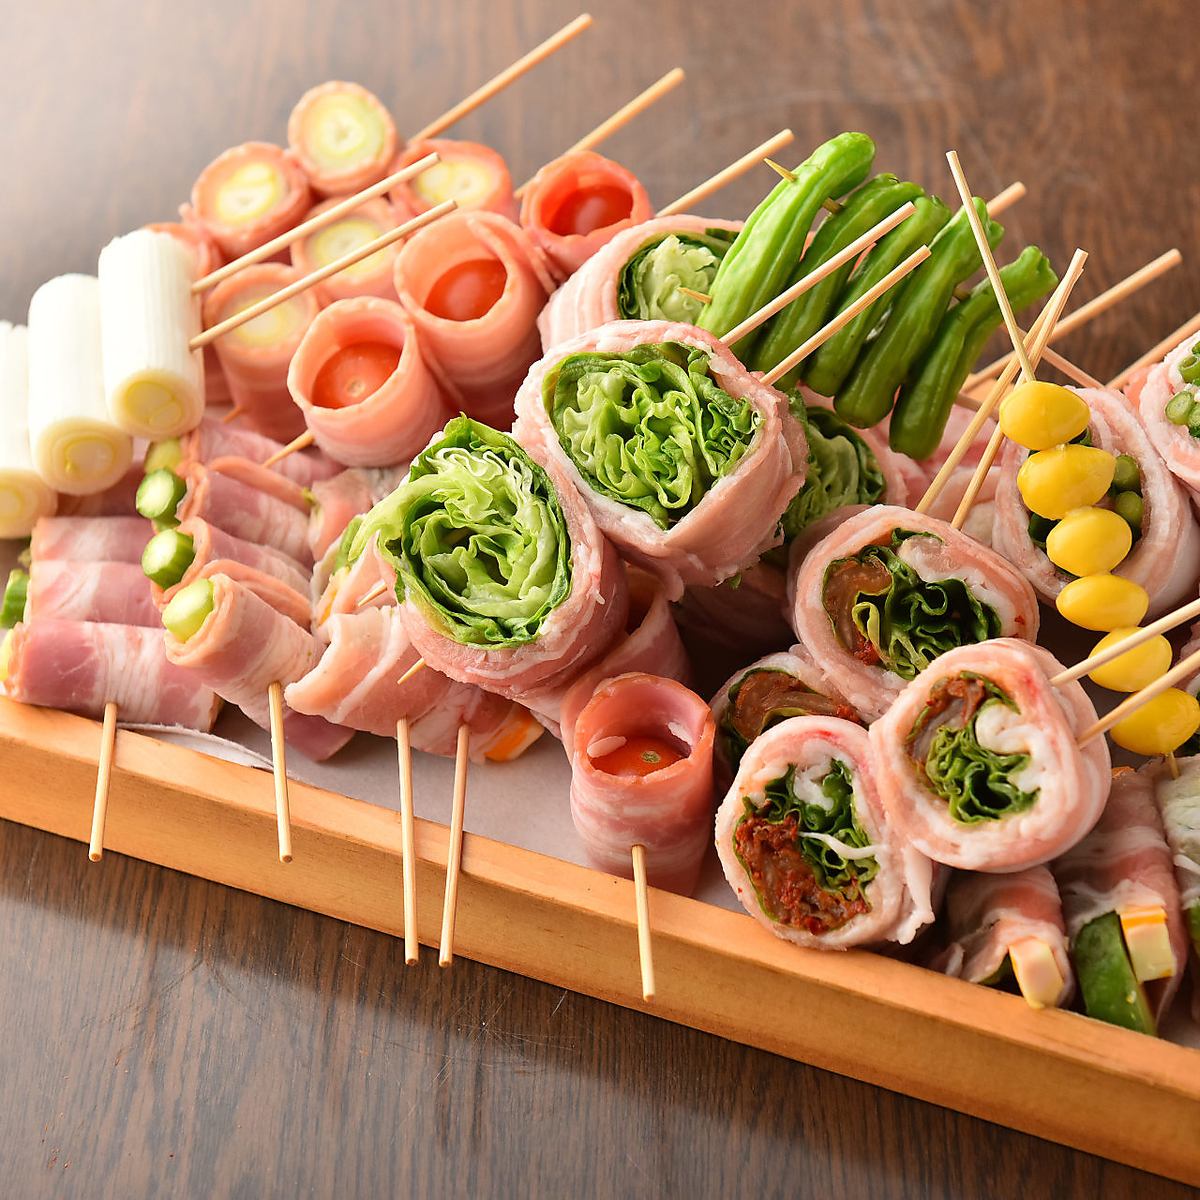 Enjoy vegetable rolls and Hakata skewers!